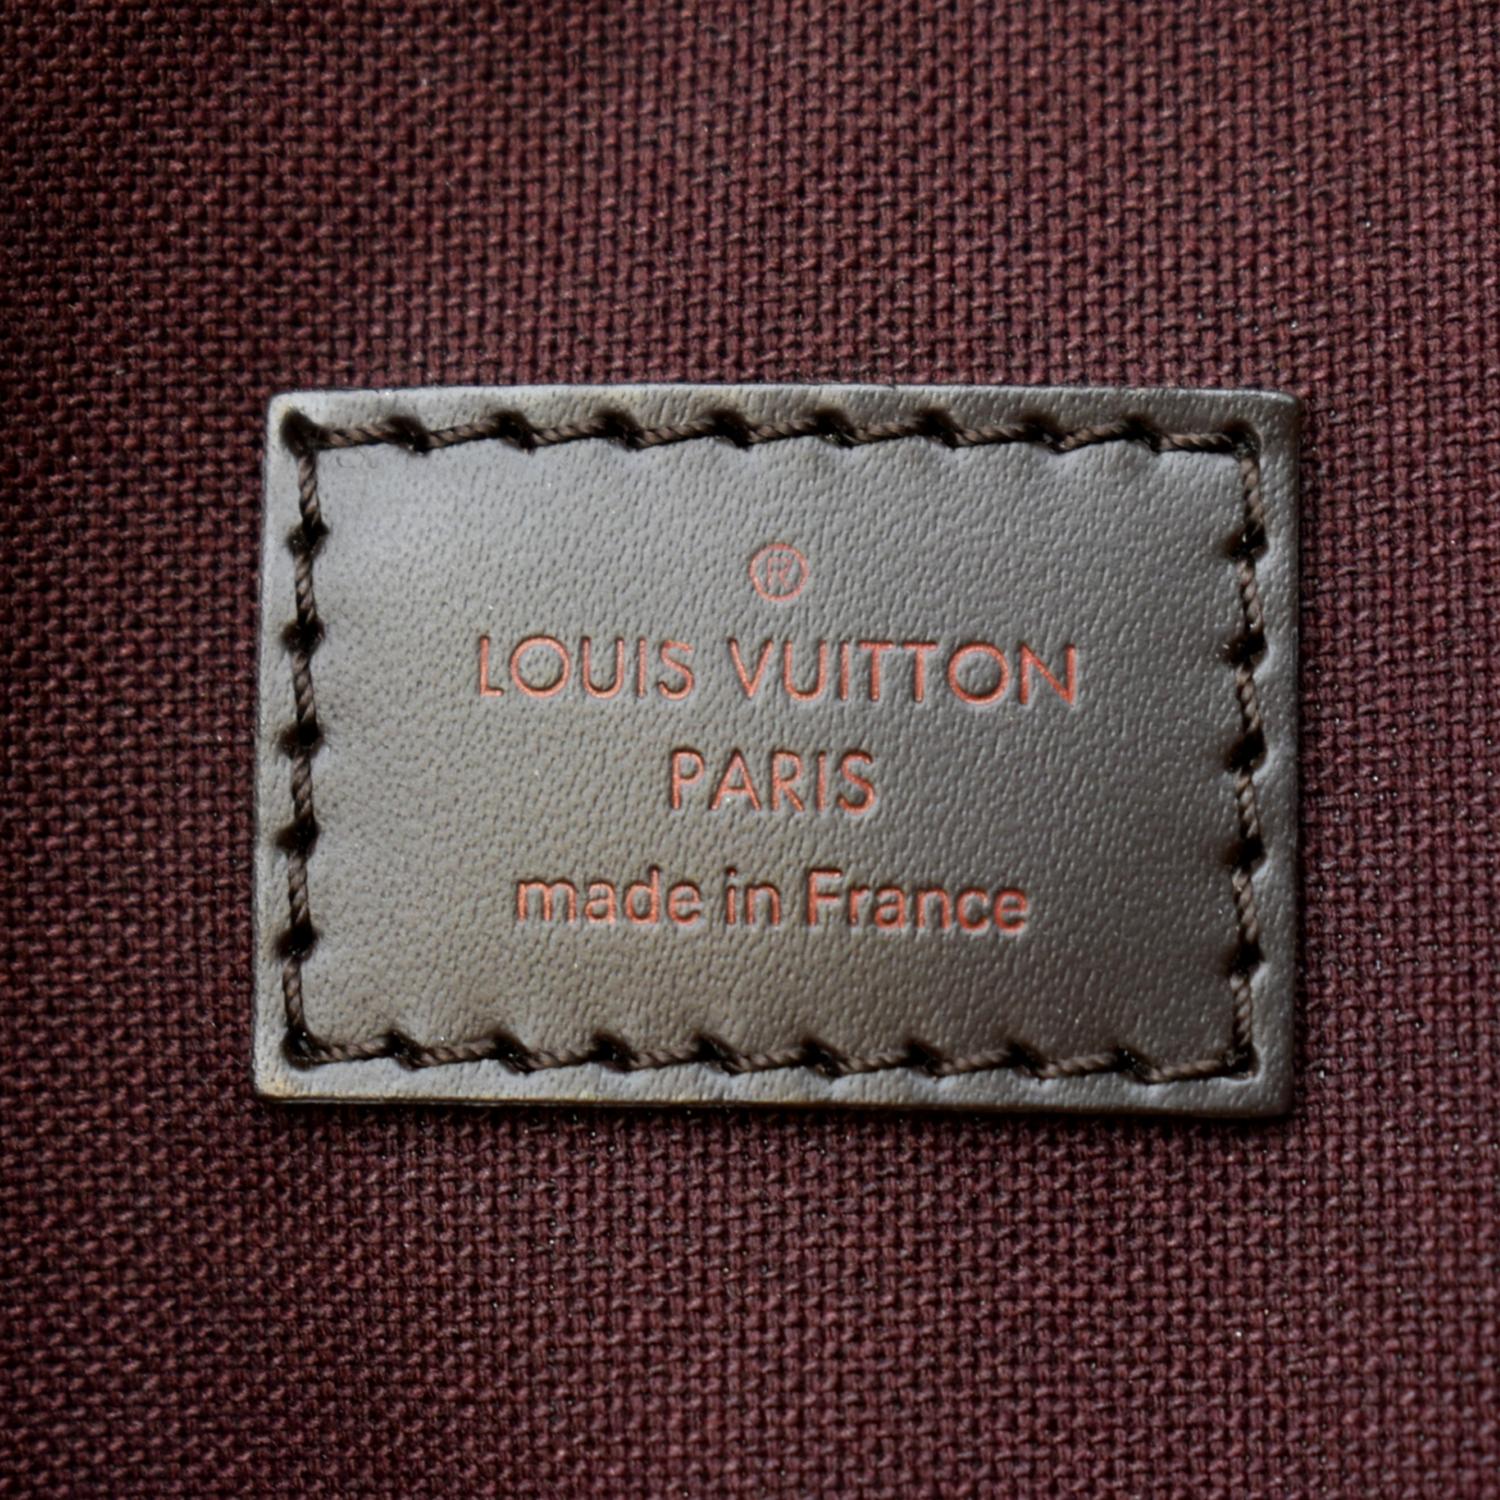 Authentic LOUIS VUITTON Hoxton GM Shoulder Bag Damier Ebene